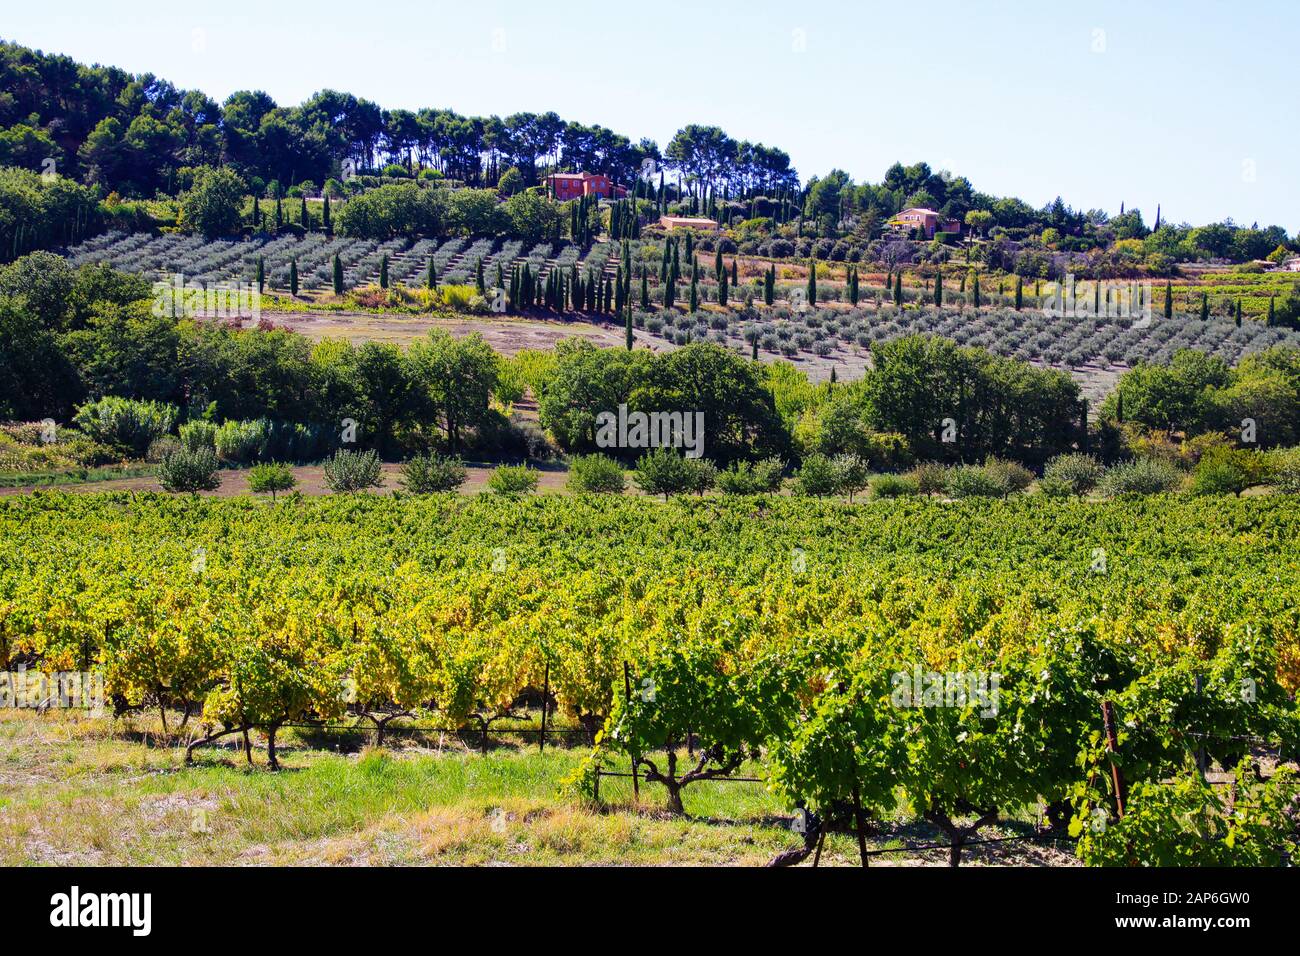 Vue sur la vallée avec des vignes, des plantes de lavande après récolte, des cyprès méditerranéens du vignoble en automne soleil - Gordes, Provence, France Banque D'Images